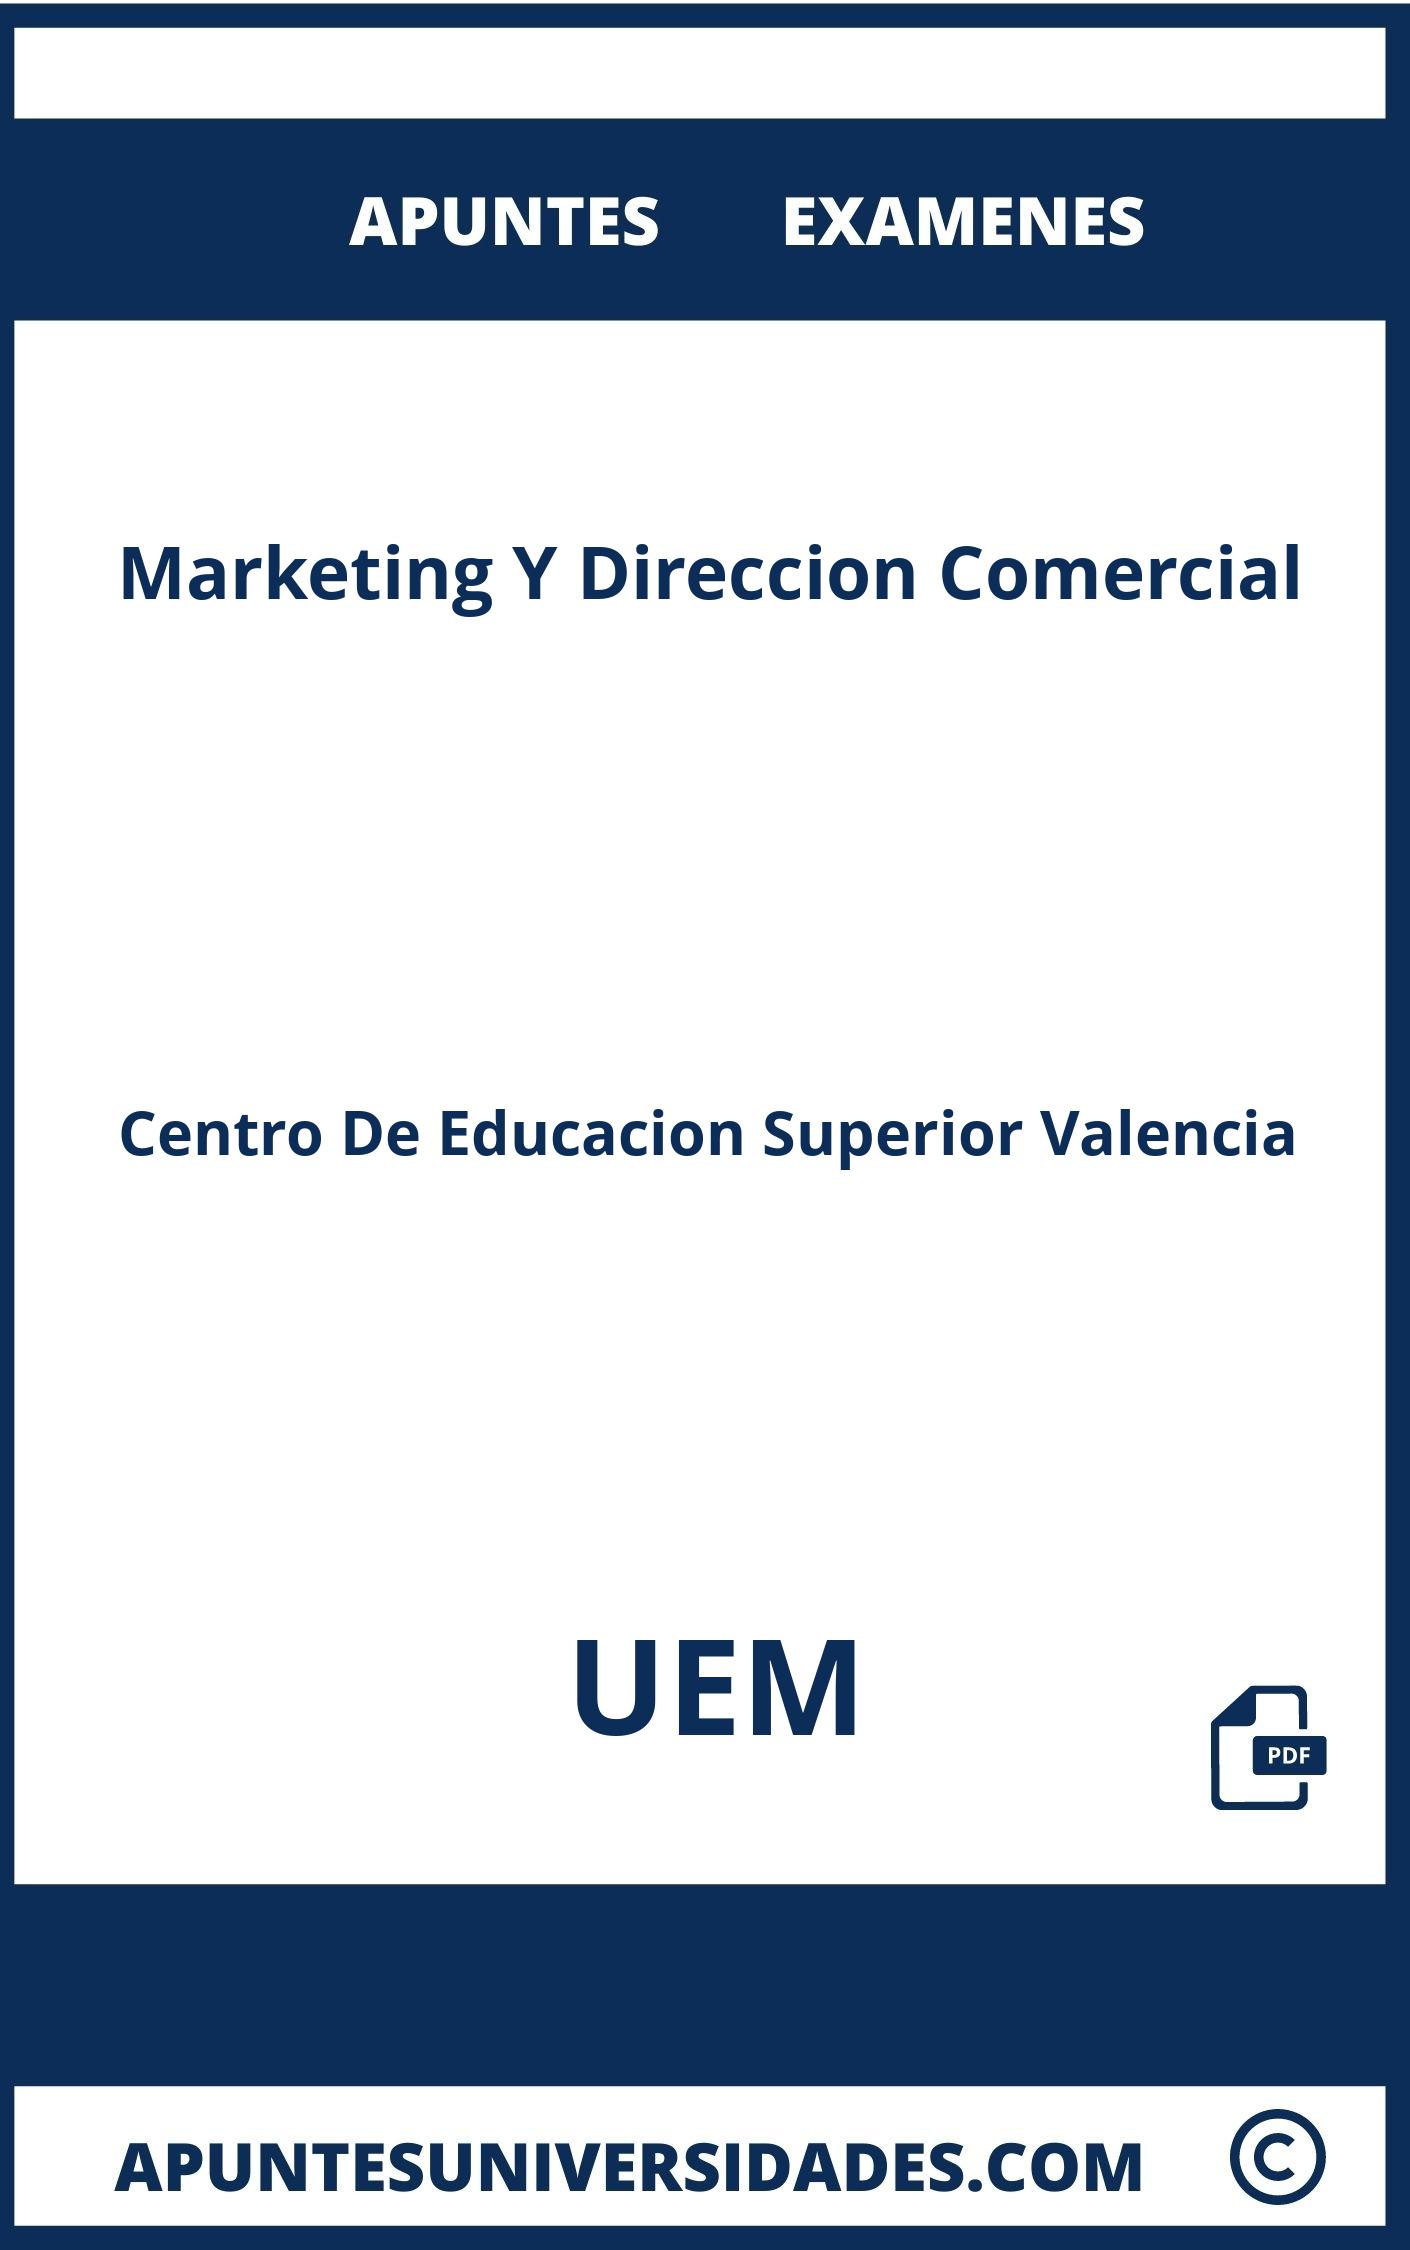 Marketing Y Direccion Comercial UEM Examenes Apuntes